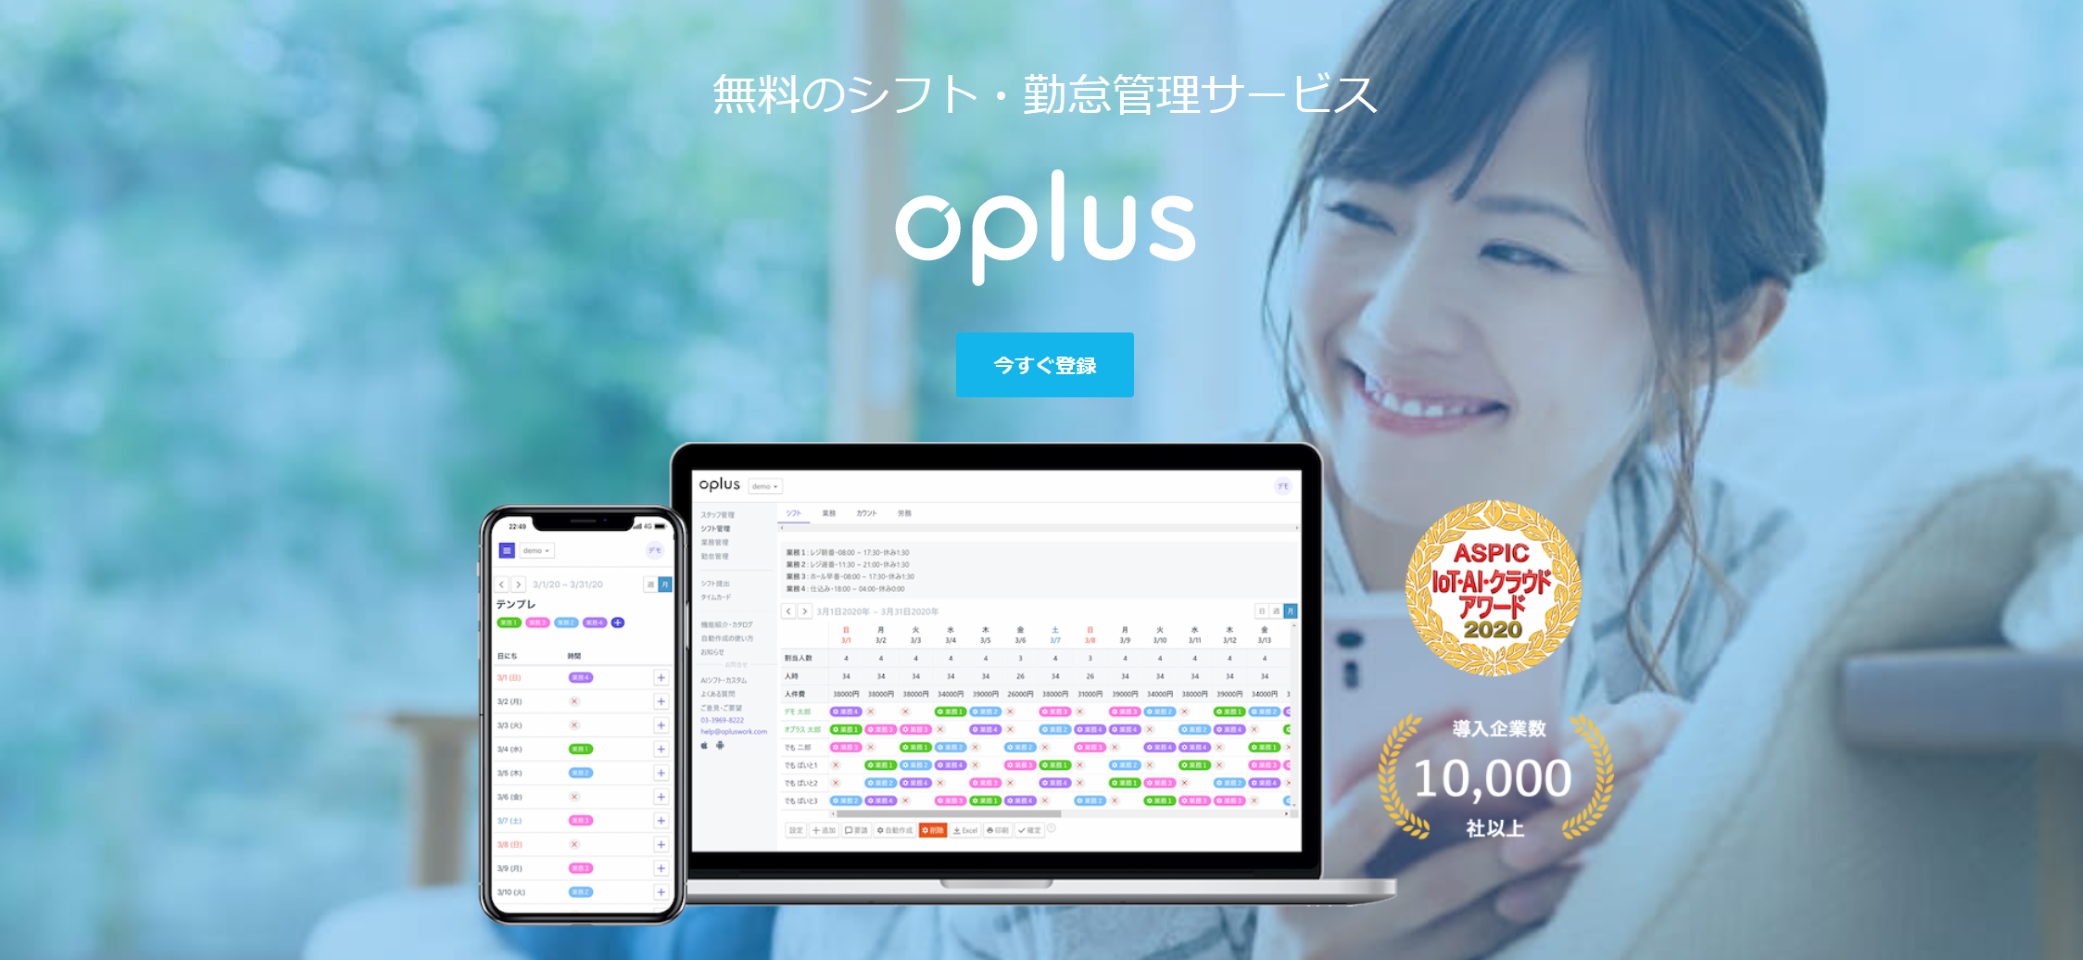 シフト・勤怠管理サービス『oplus（オプラス）』は、フリーミアムモデルのクラウドサービス。